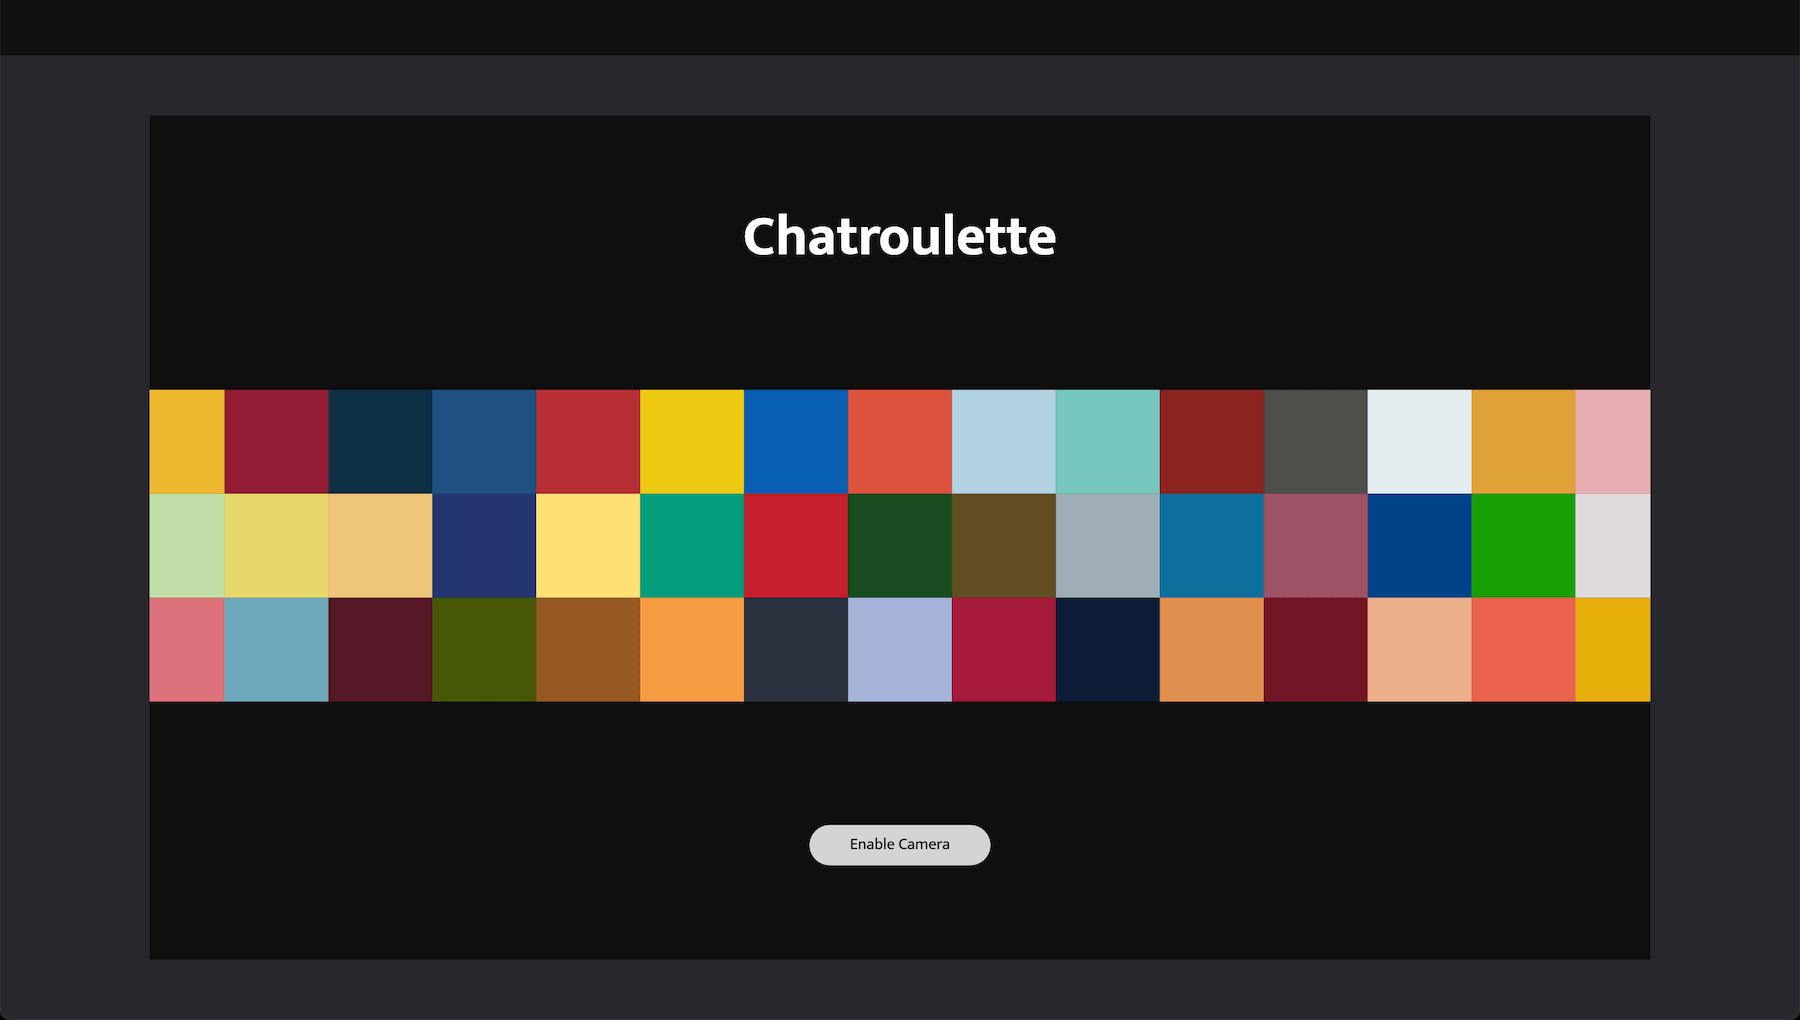 Chatroulette t Chatroulette Review